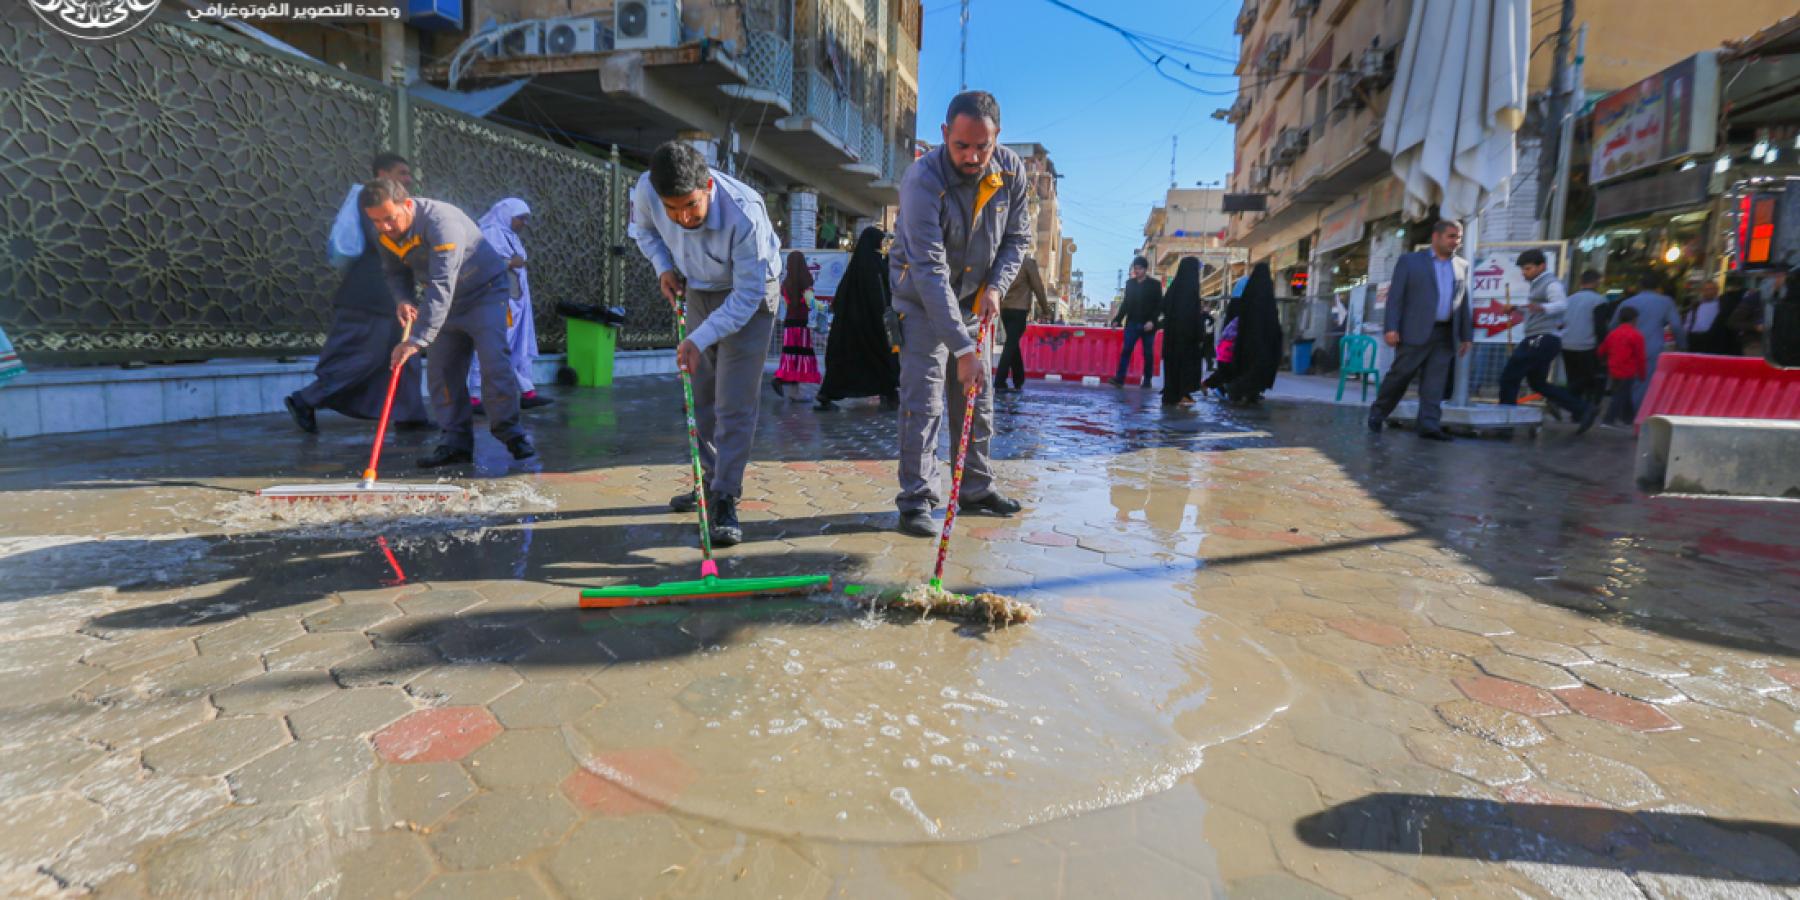 قسم الخدمات الخارجية ينفذ حملة لتنظيف الشوارع الرئيسية المحيطة بالصحن الحيدري الشريف